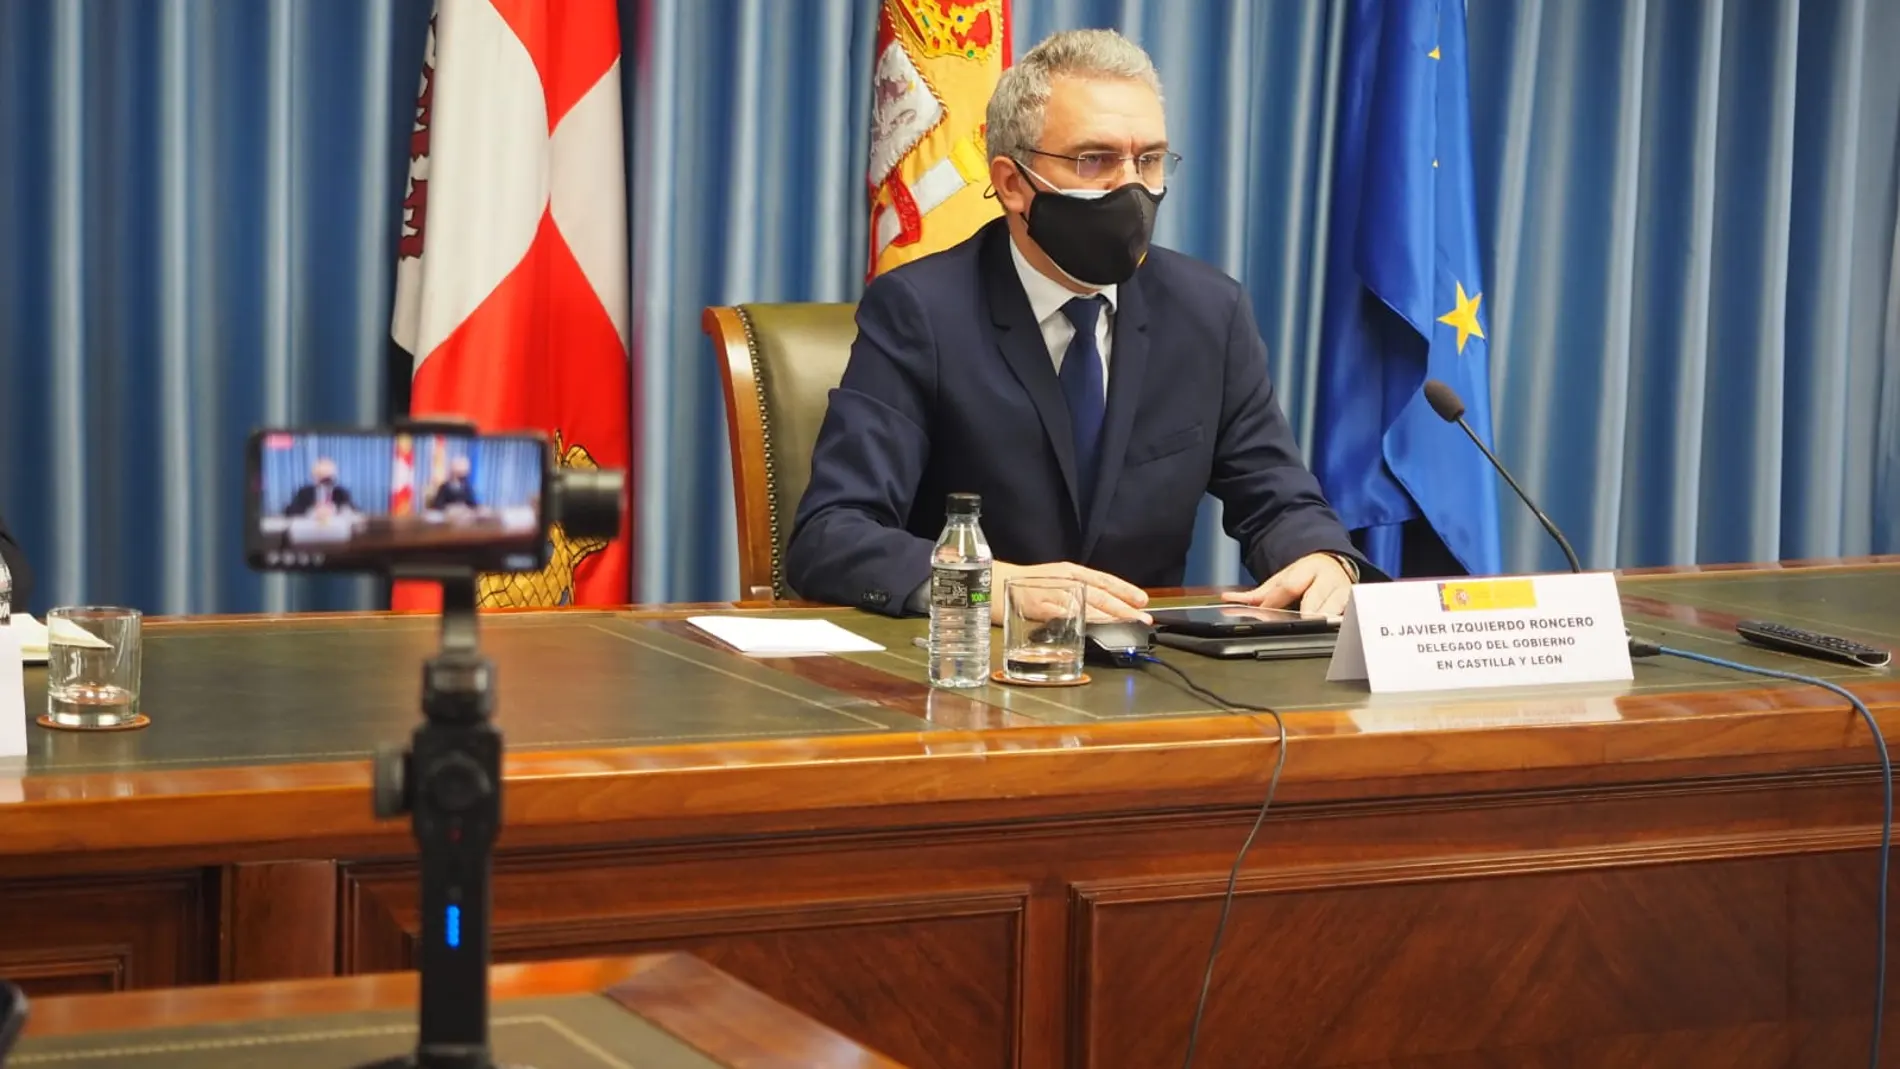 El delegado del Gobierno, Javier izquierdo, informa sobre las actuaciones realizadas en Castilla y León para paliar los efectos de la Covid